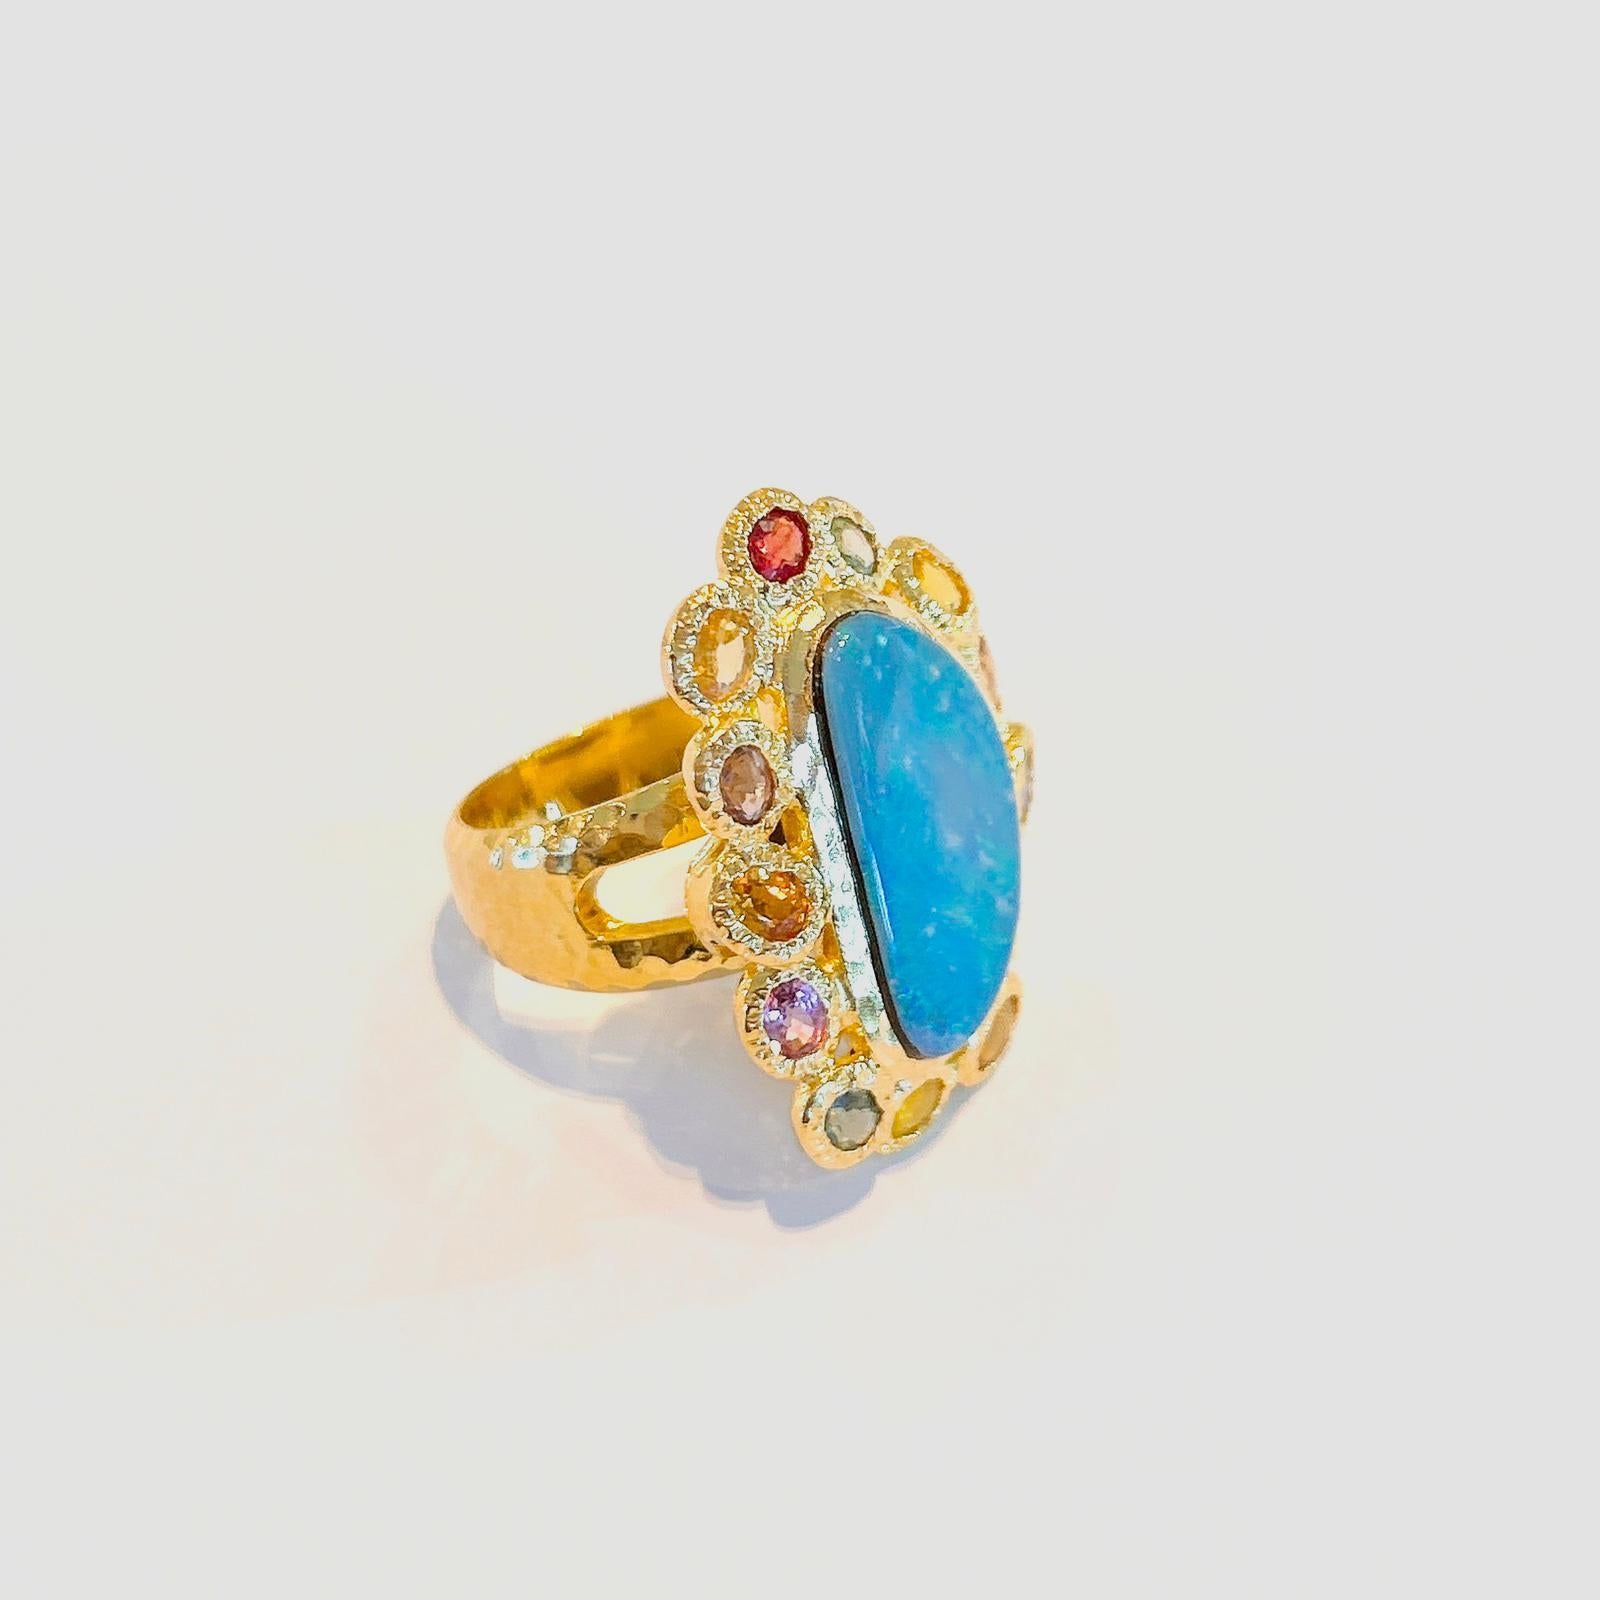 Baroque Bochic “Capri” Blue Opal & Multi Color Sapphire Ring Set in 22k Gold & Silver